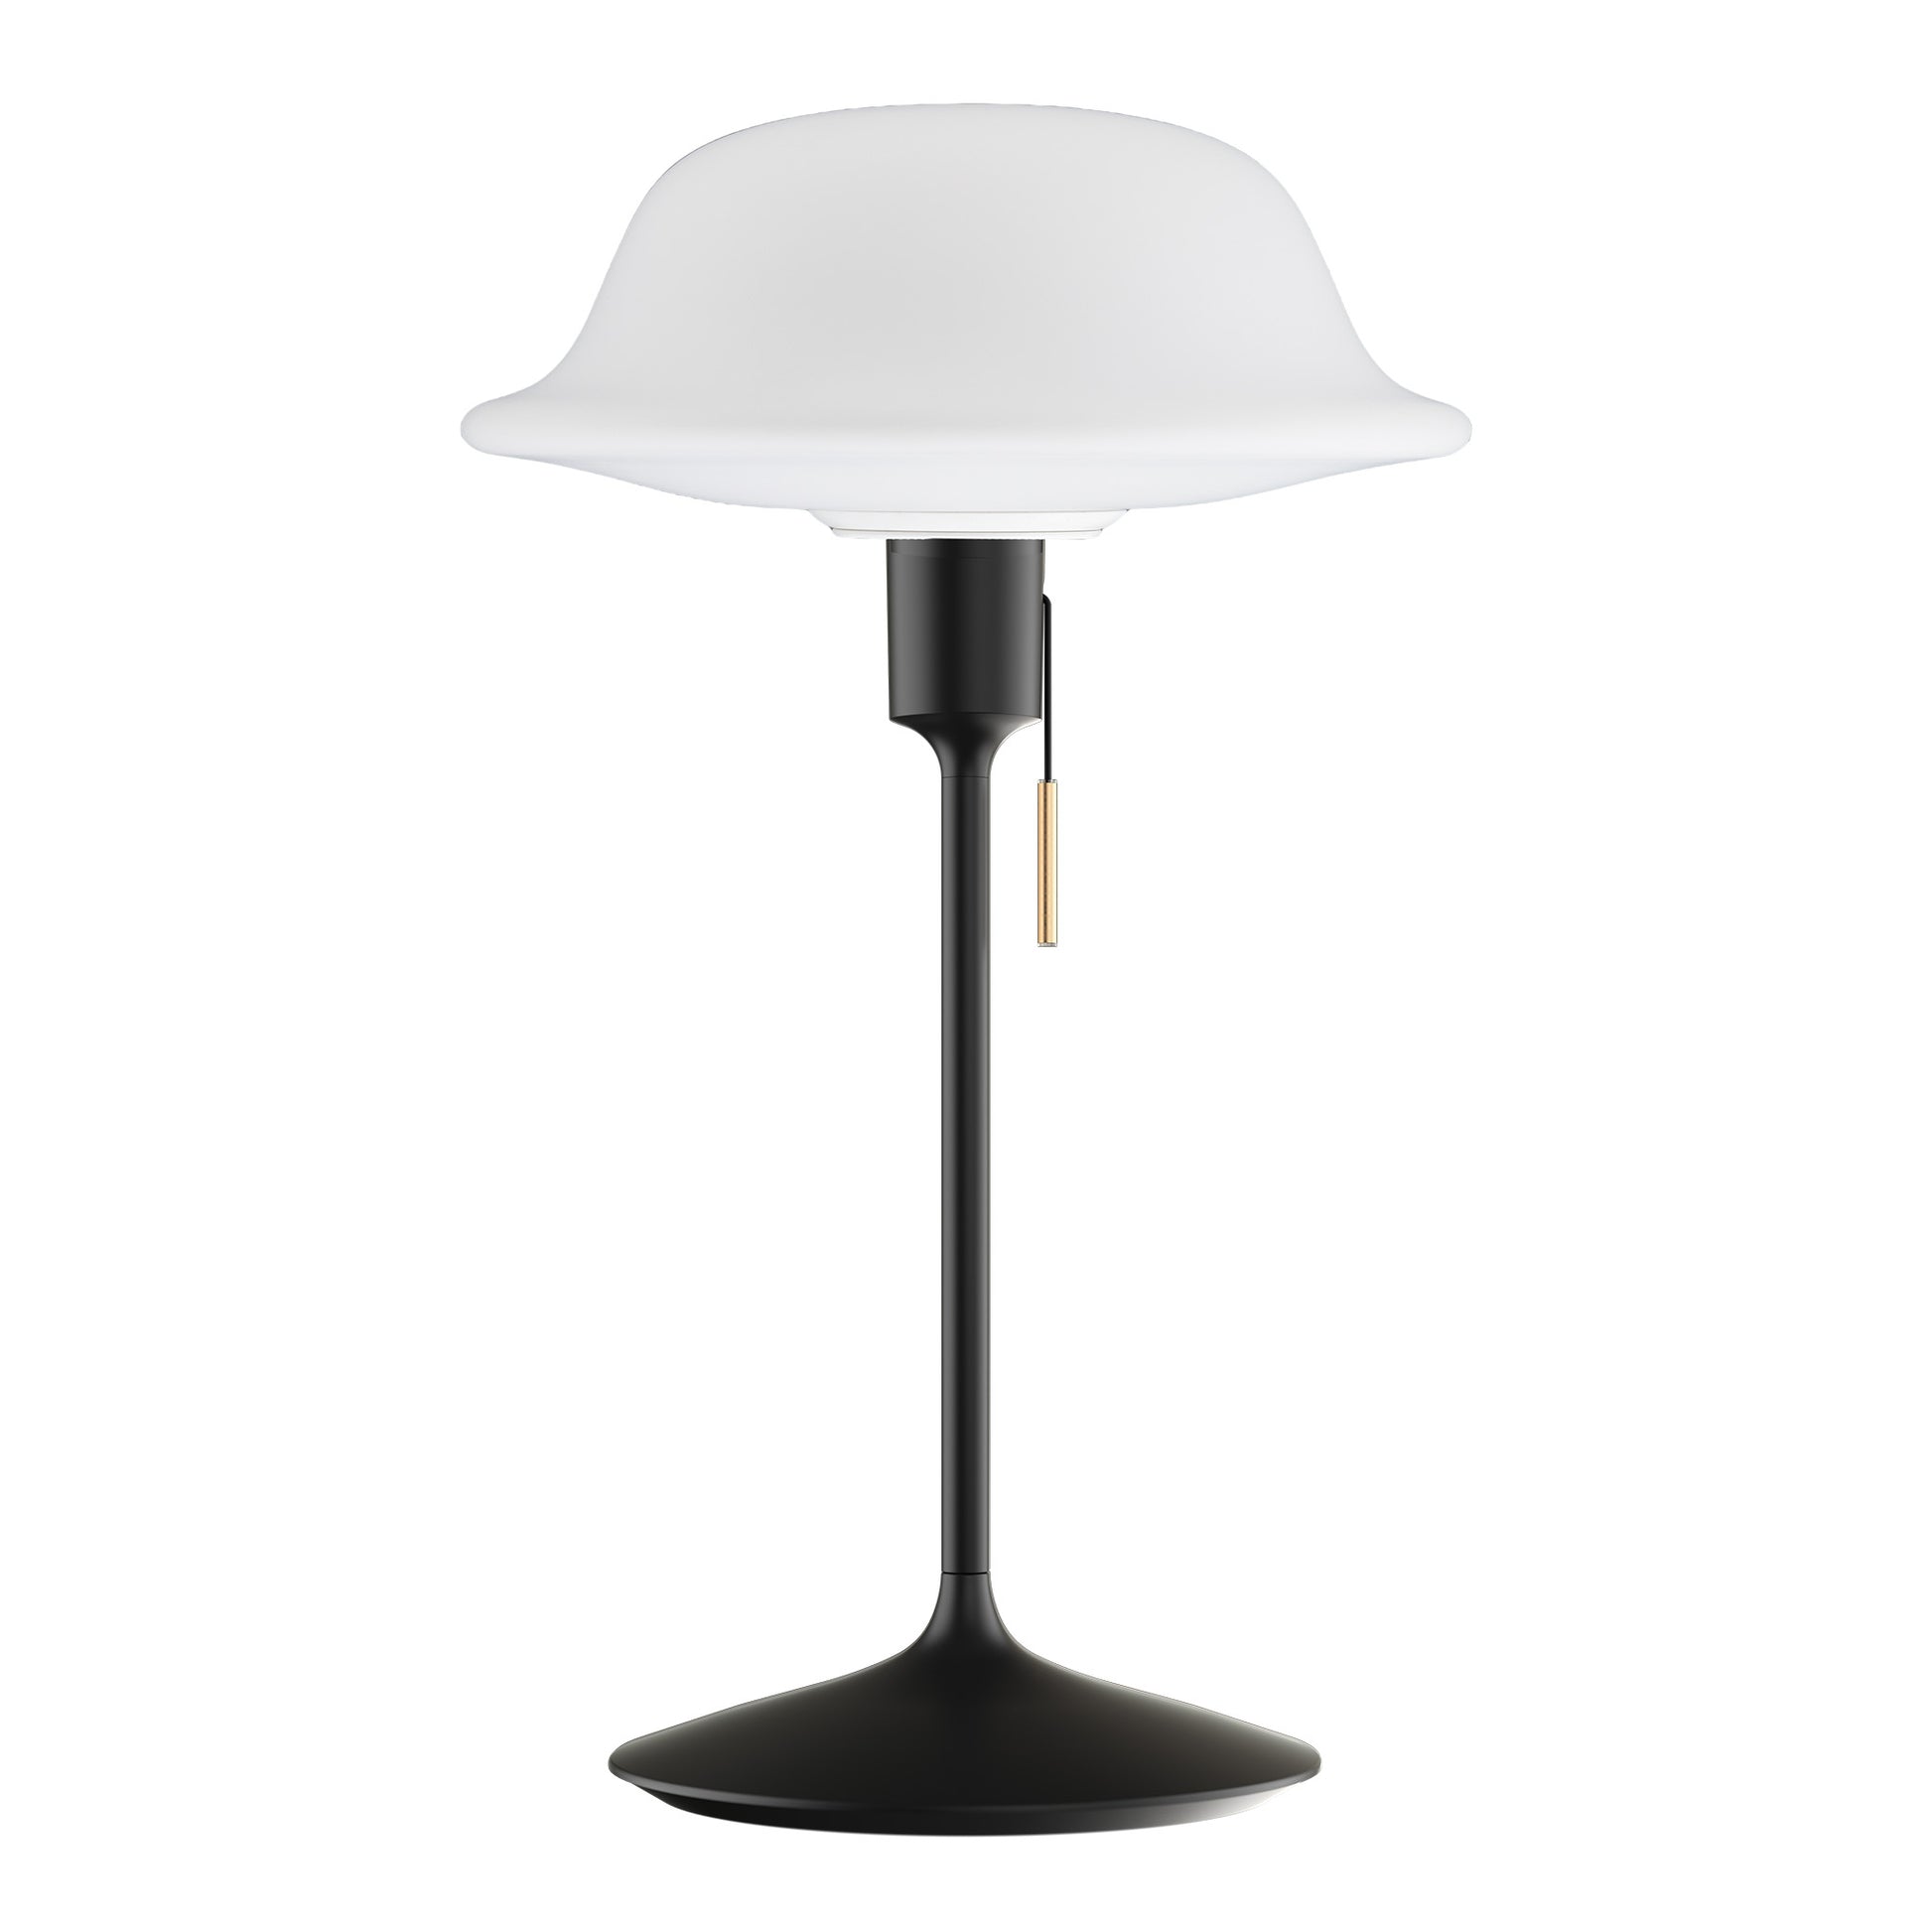 Santé bordslampa i svart med Butler lampskärm i glas